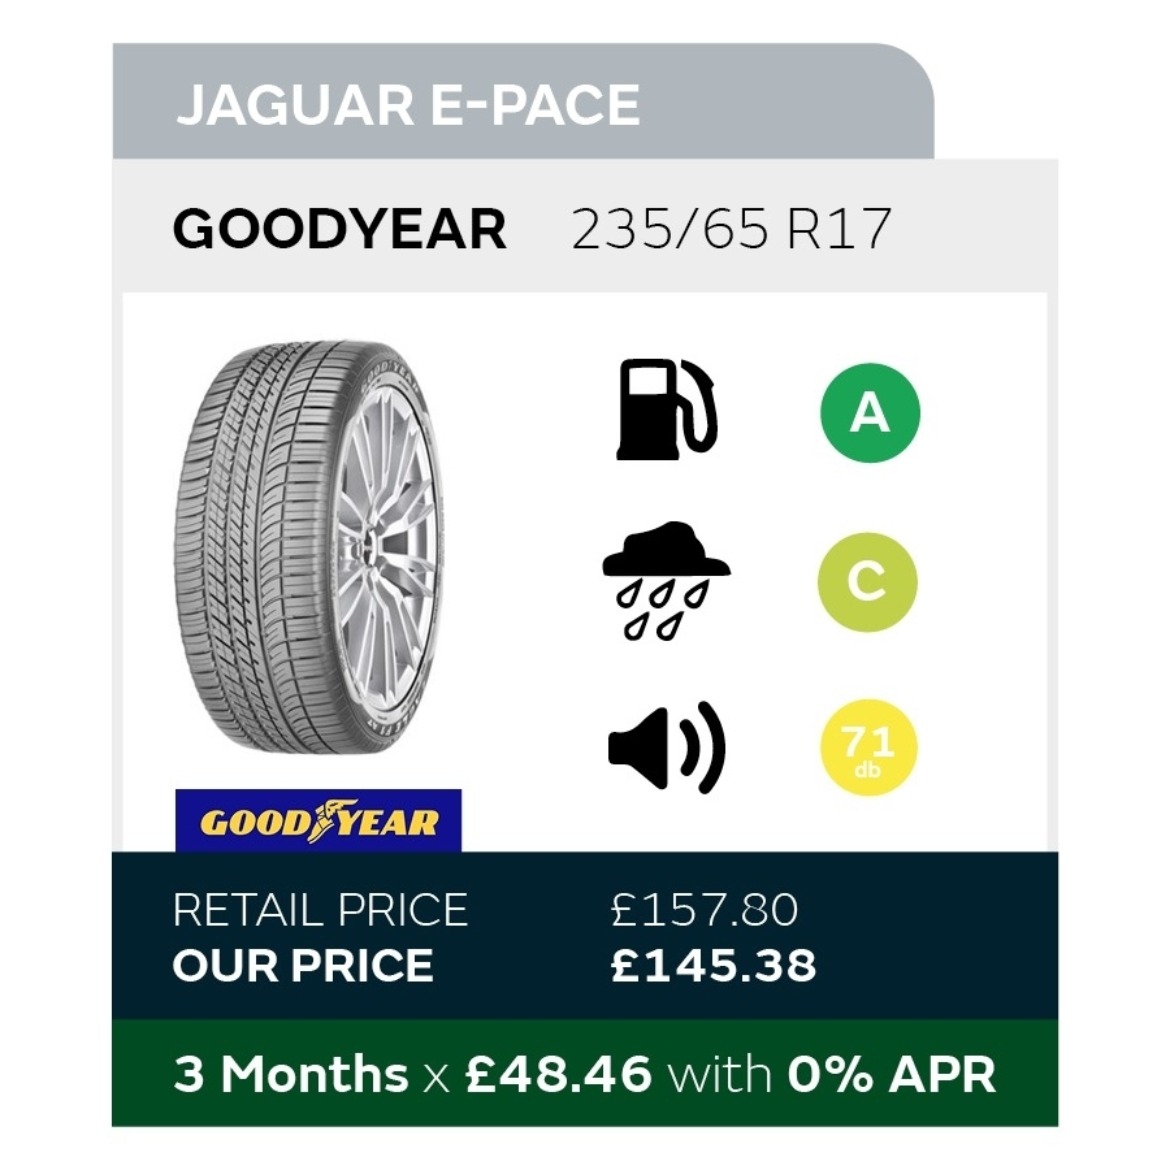 Jaguar E-Pace Tyre Offer